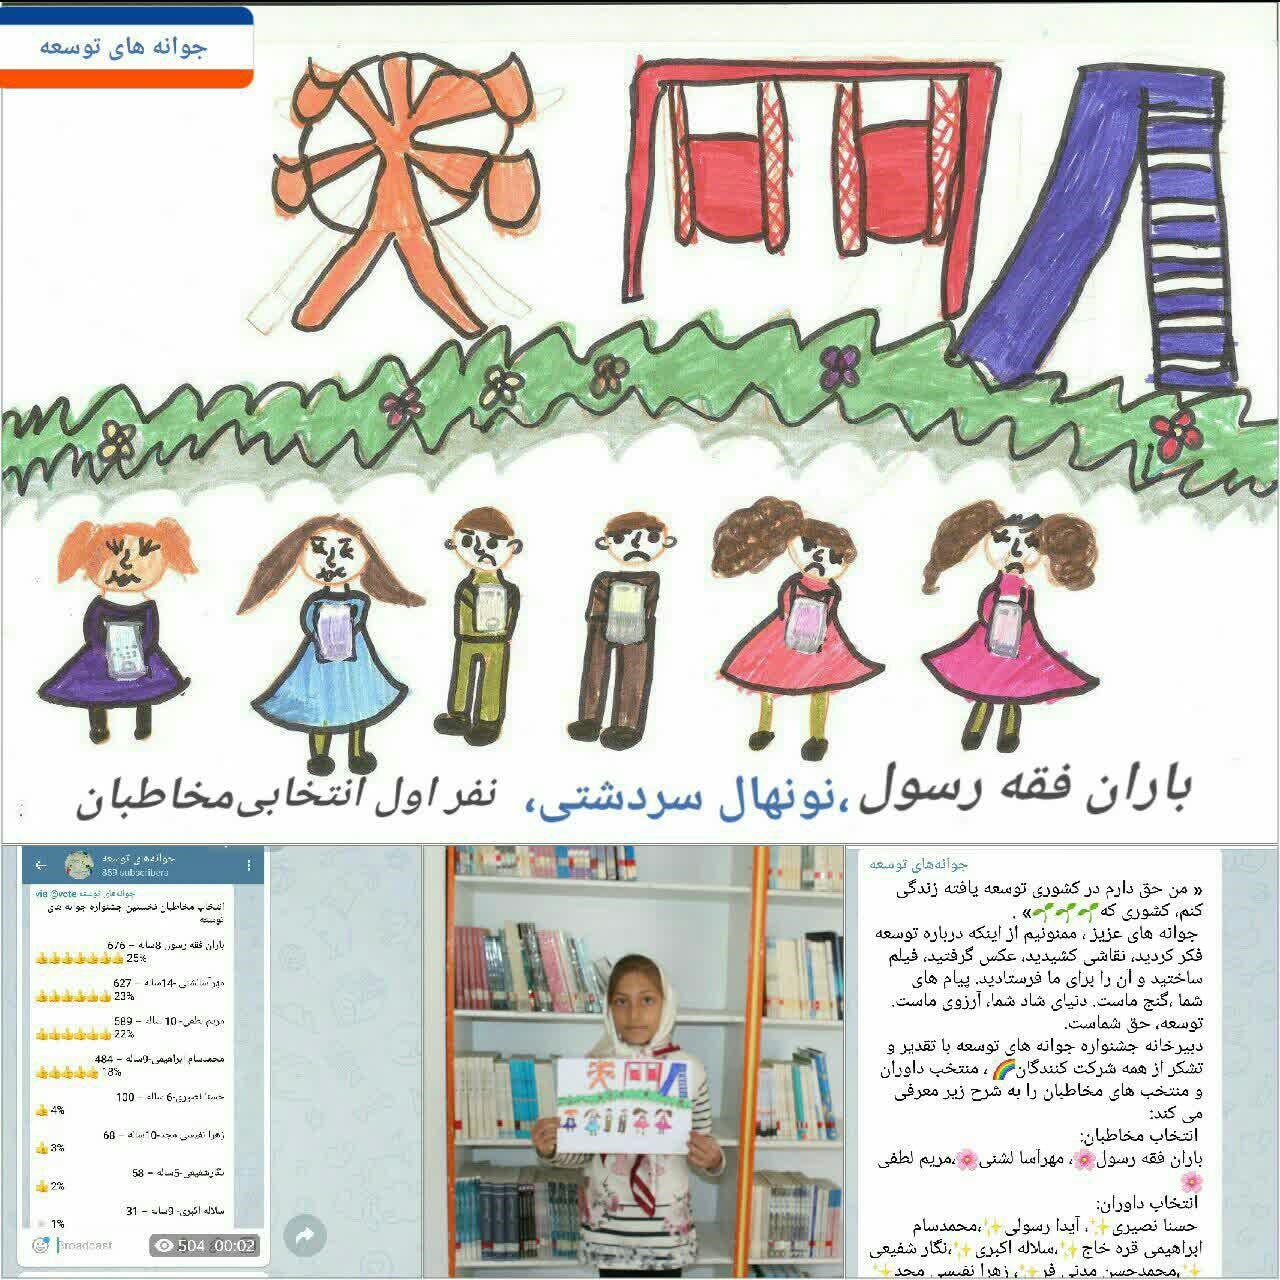 نقاشی کودک سردشتی منتخب مخاطبان جشنواره توسعه شد